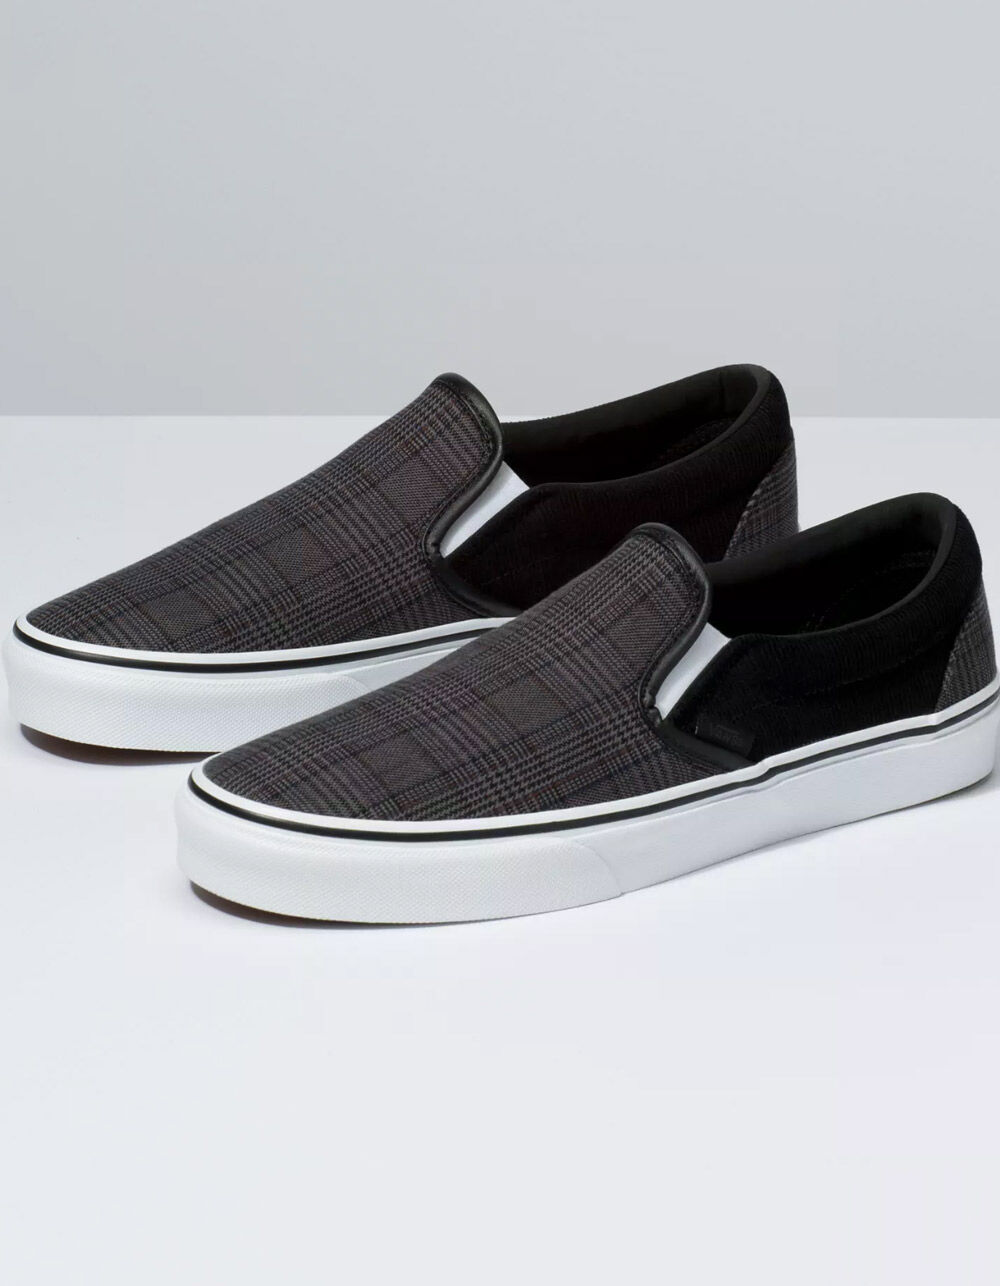 VANS Suiting Black & True White Slip-On Shoes - BLACK/TRUE WHITE | Tillys